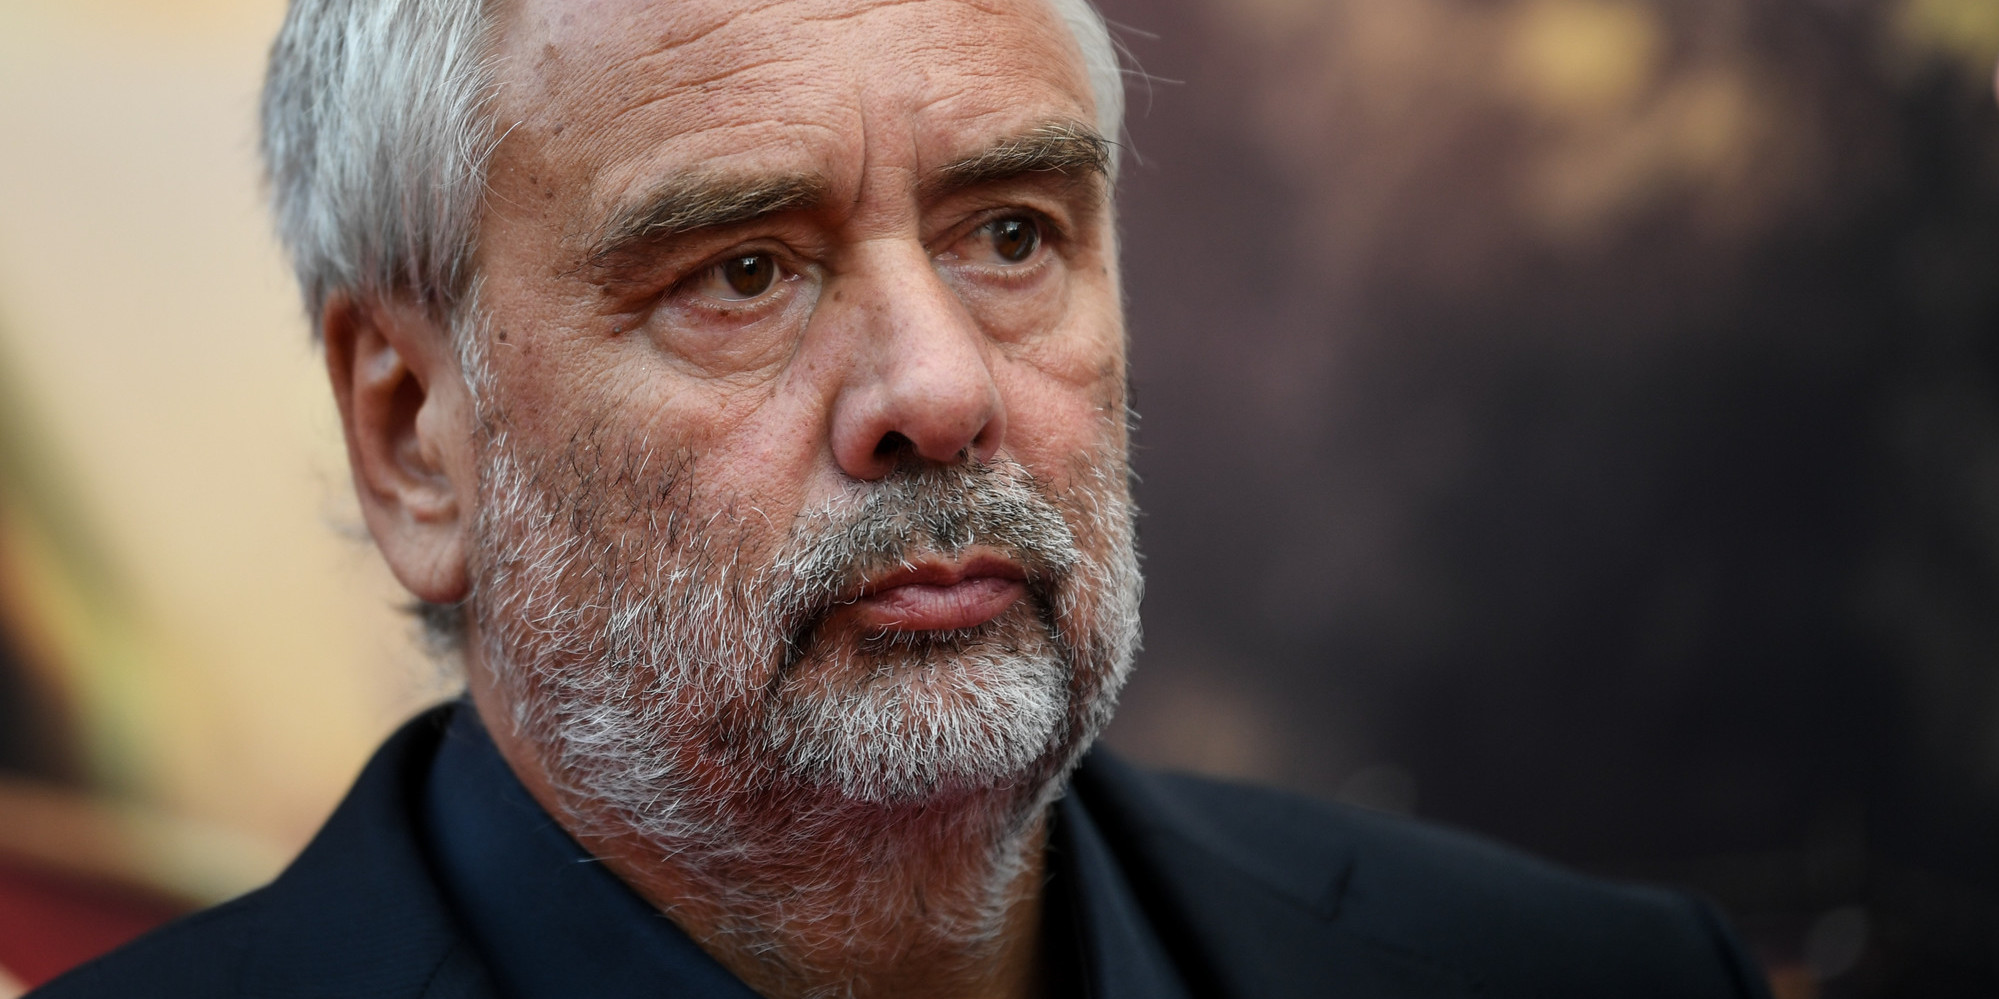 Criblé de dettes, Luc Besson cherche du secours aux les Etats-Unis